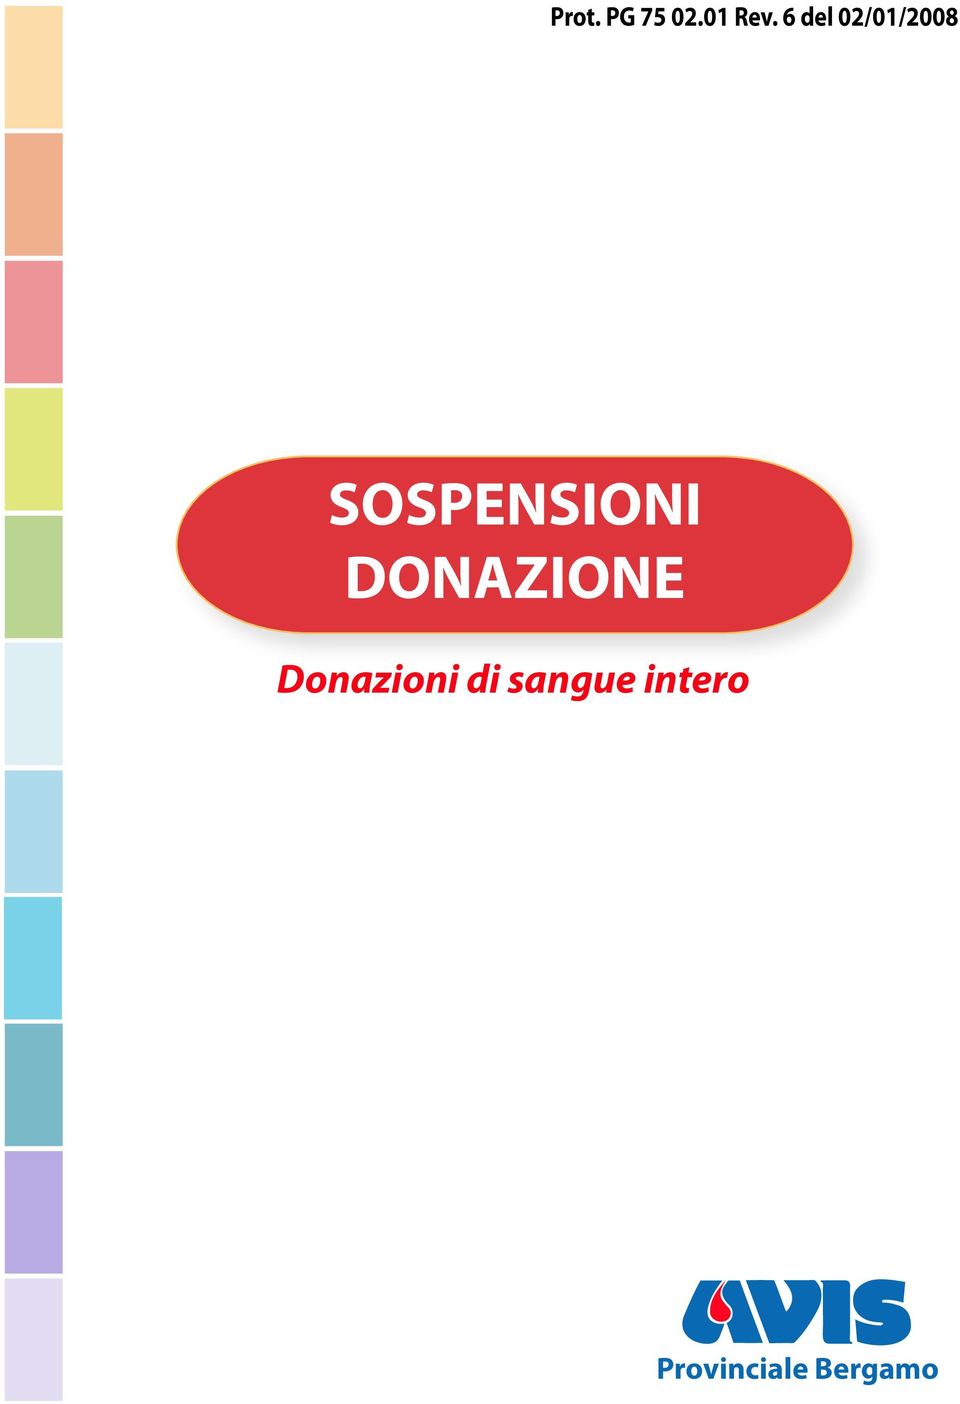 SOSPENSIONI DONAZIONE